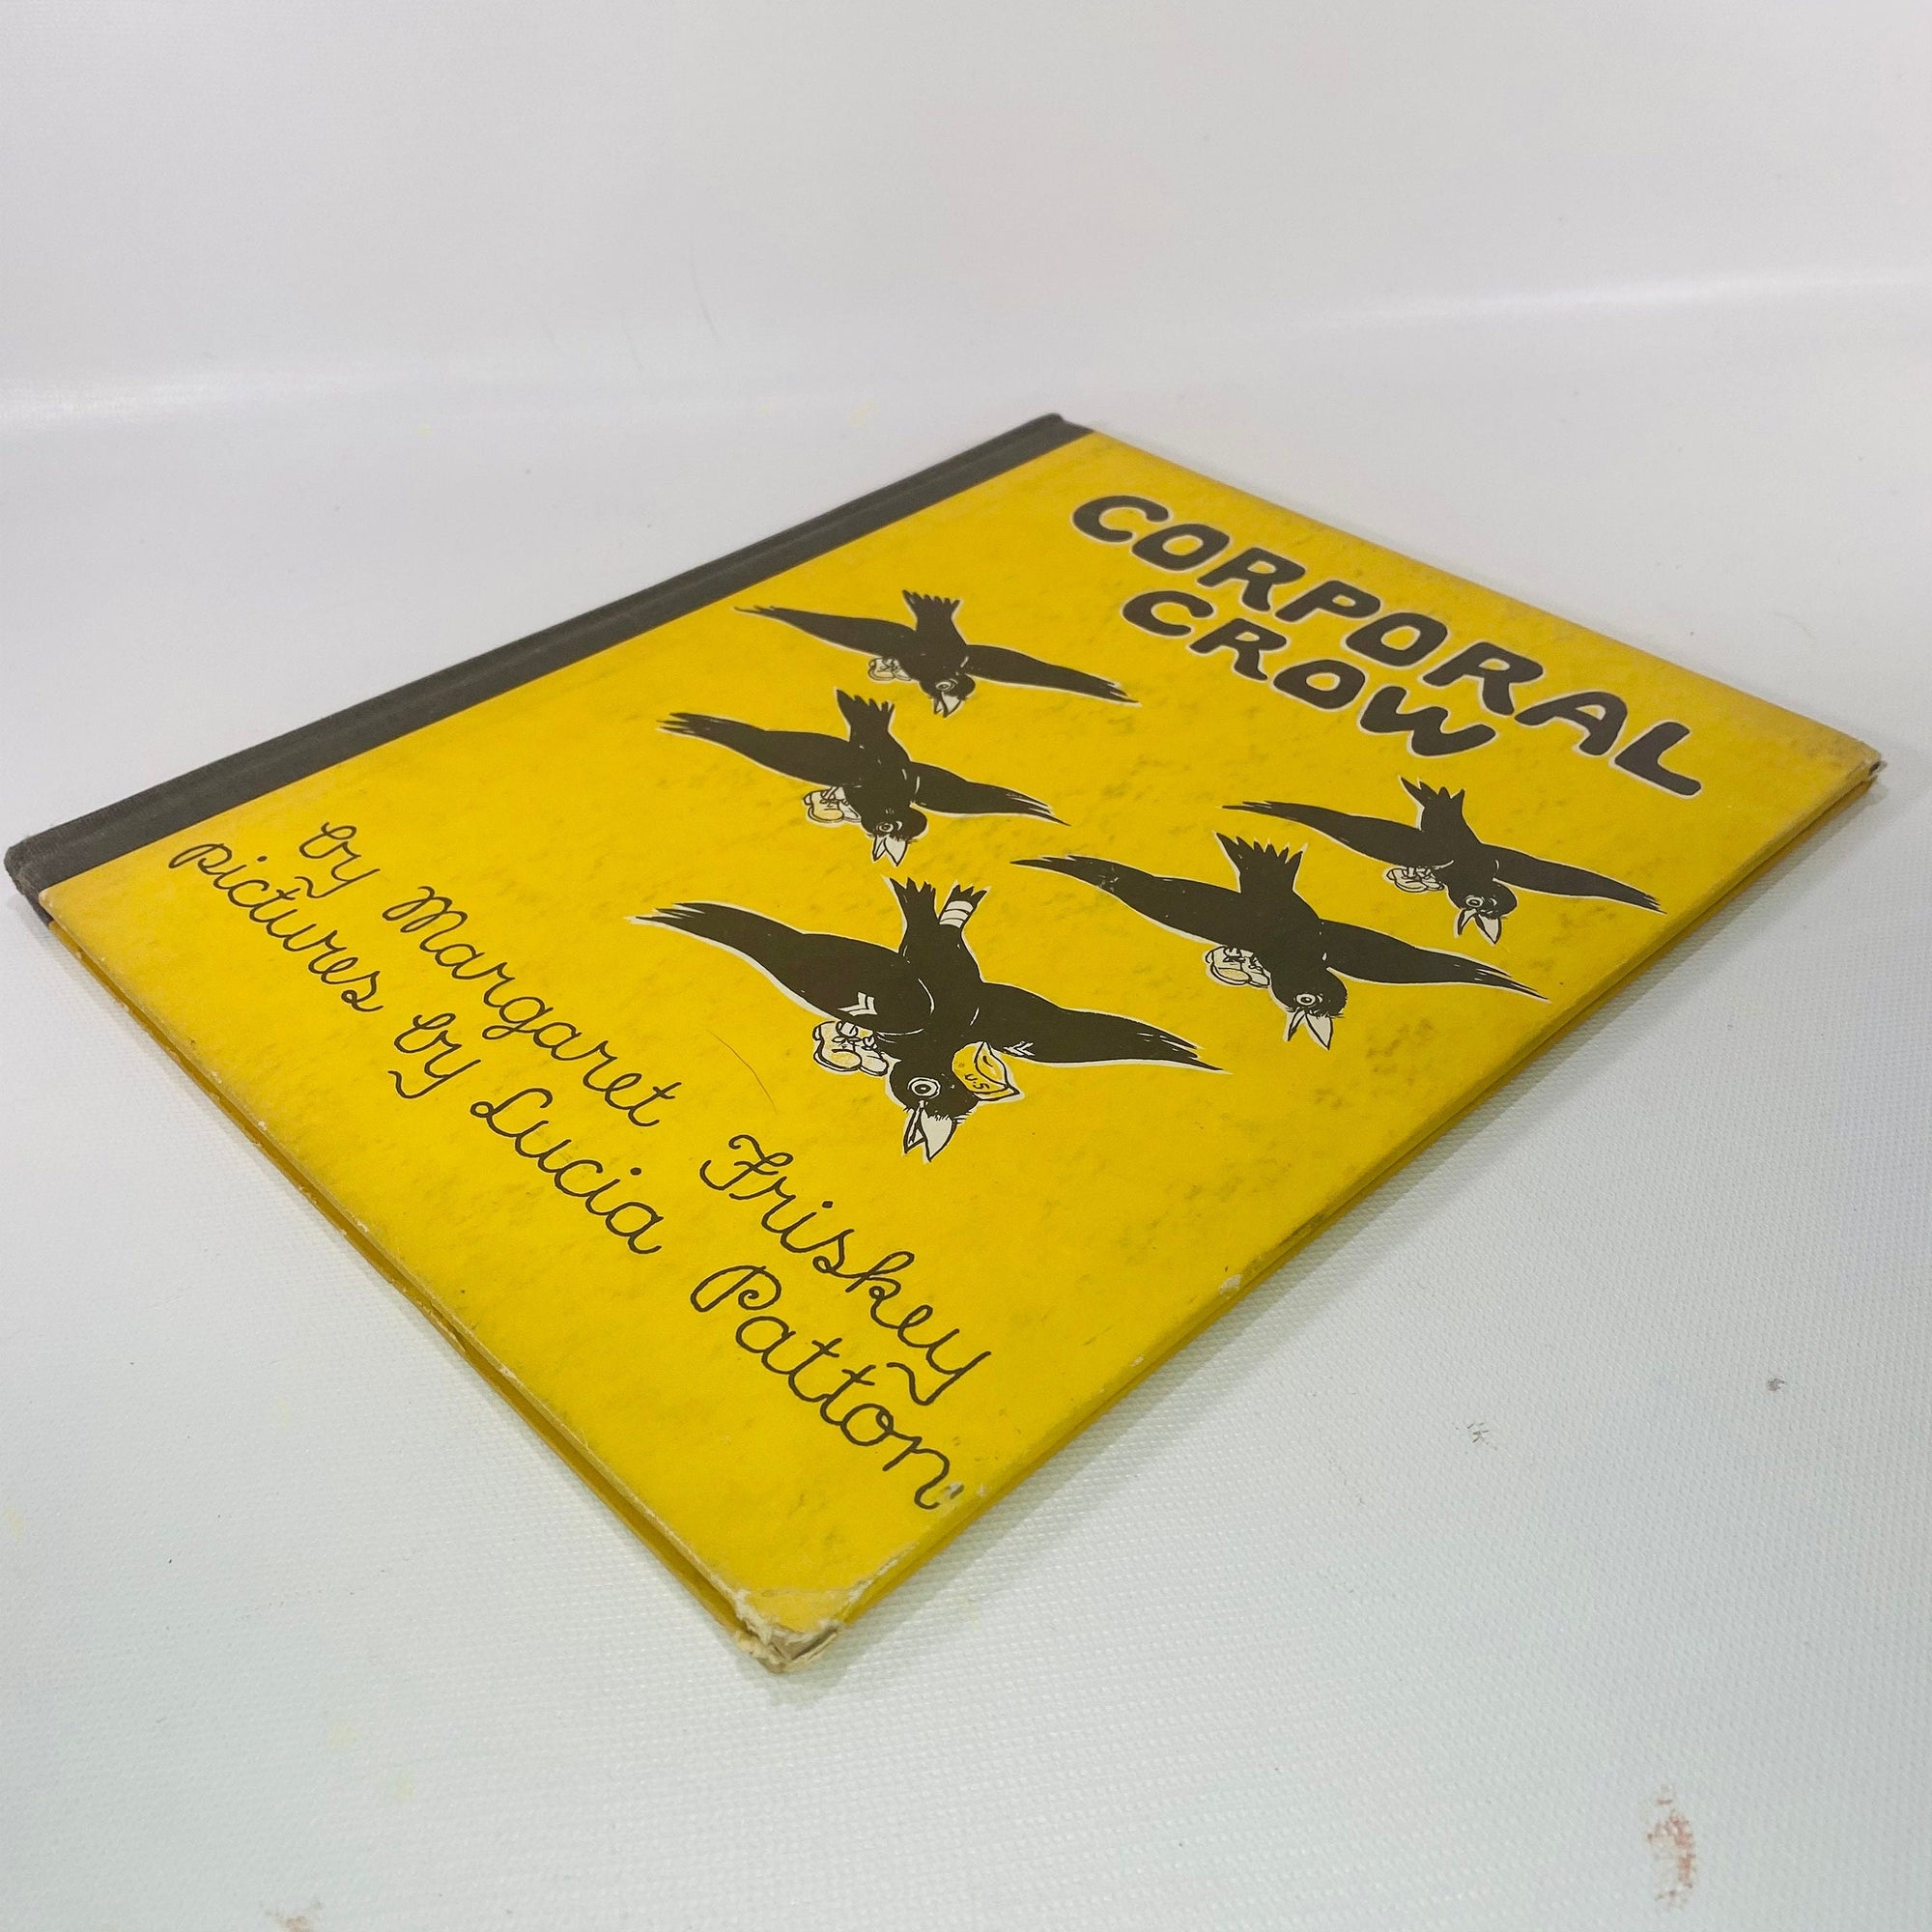 Corporal Crow by Margaret Friskey 1944 David McKay Company Vintage Book